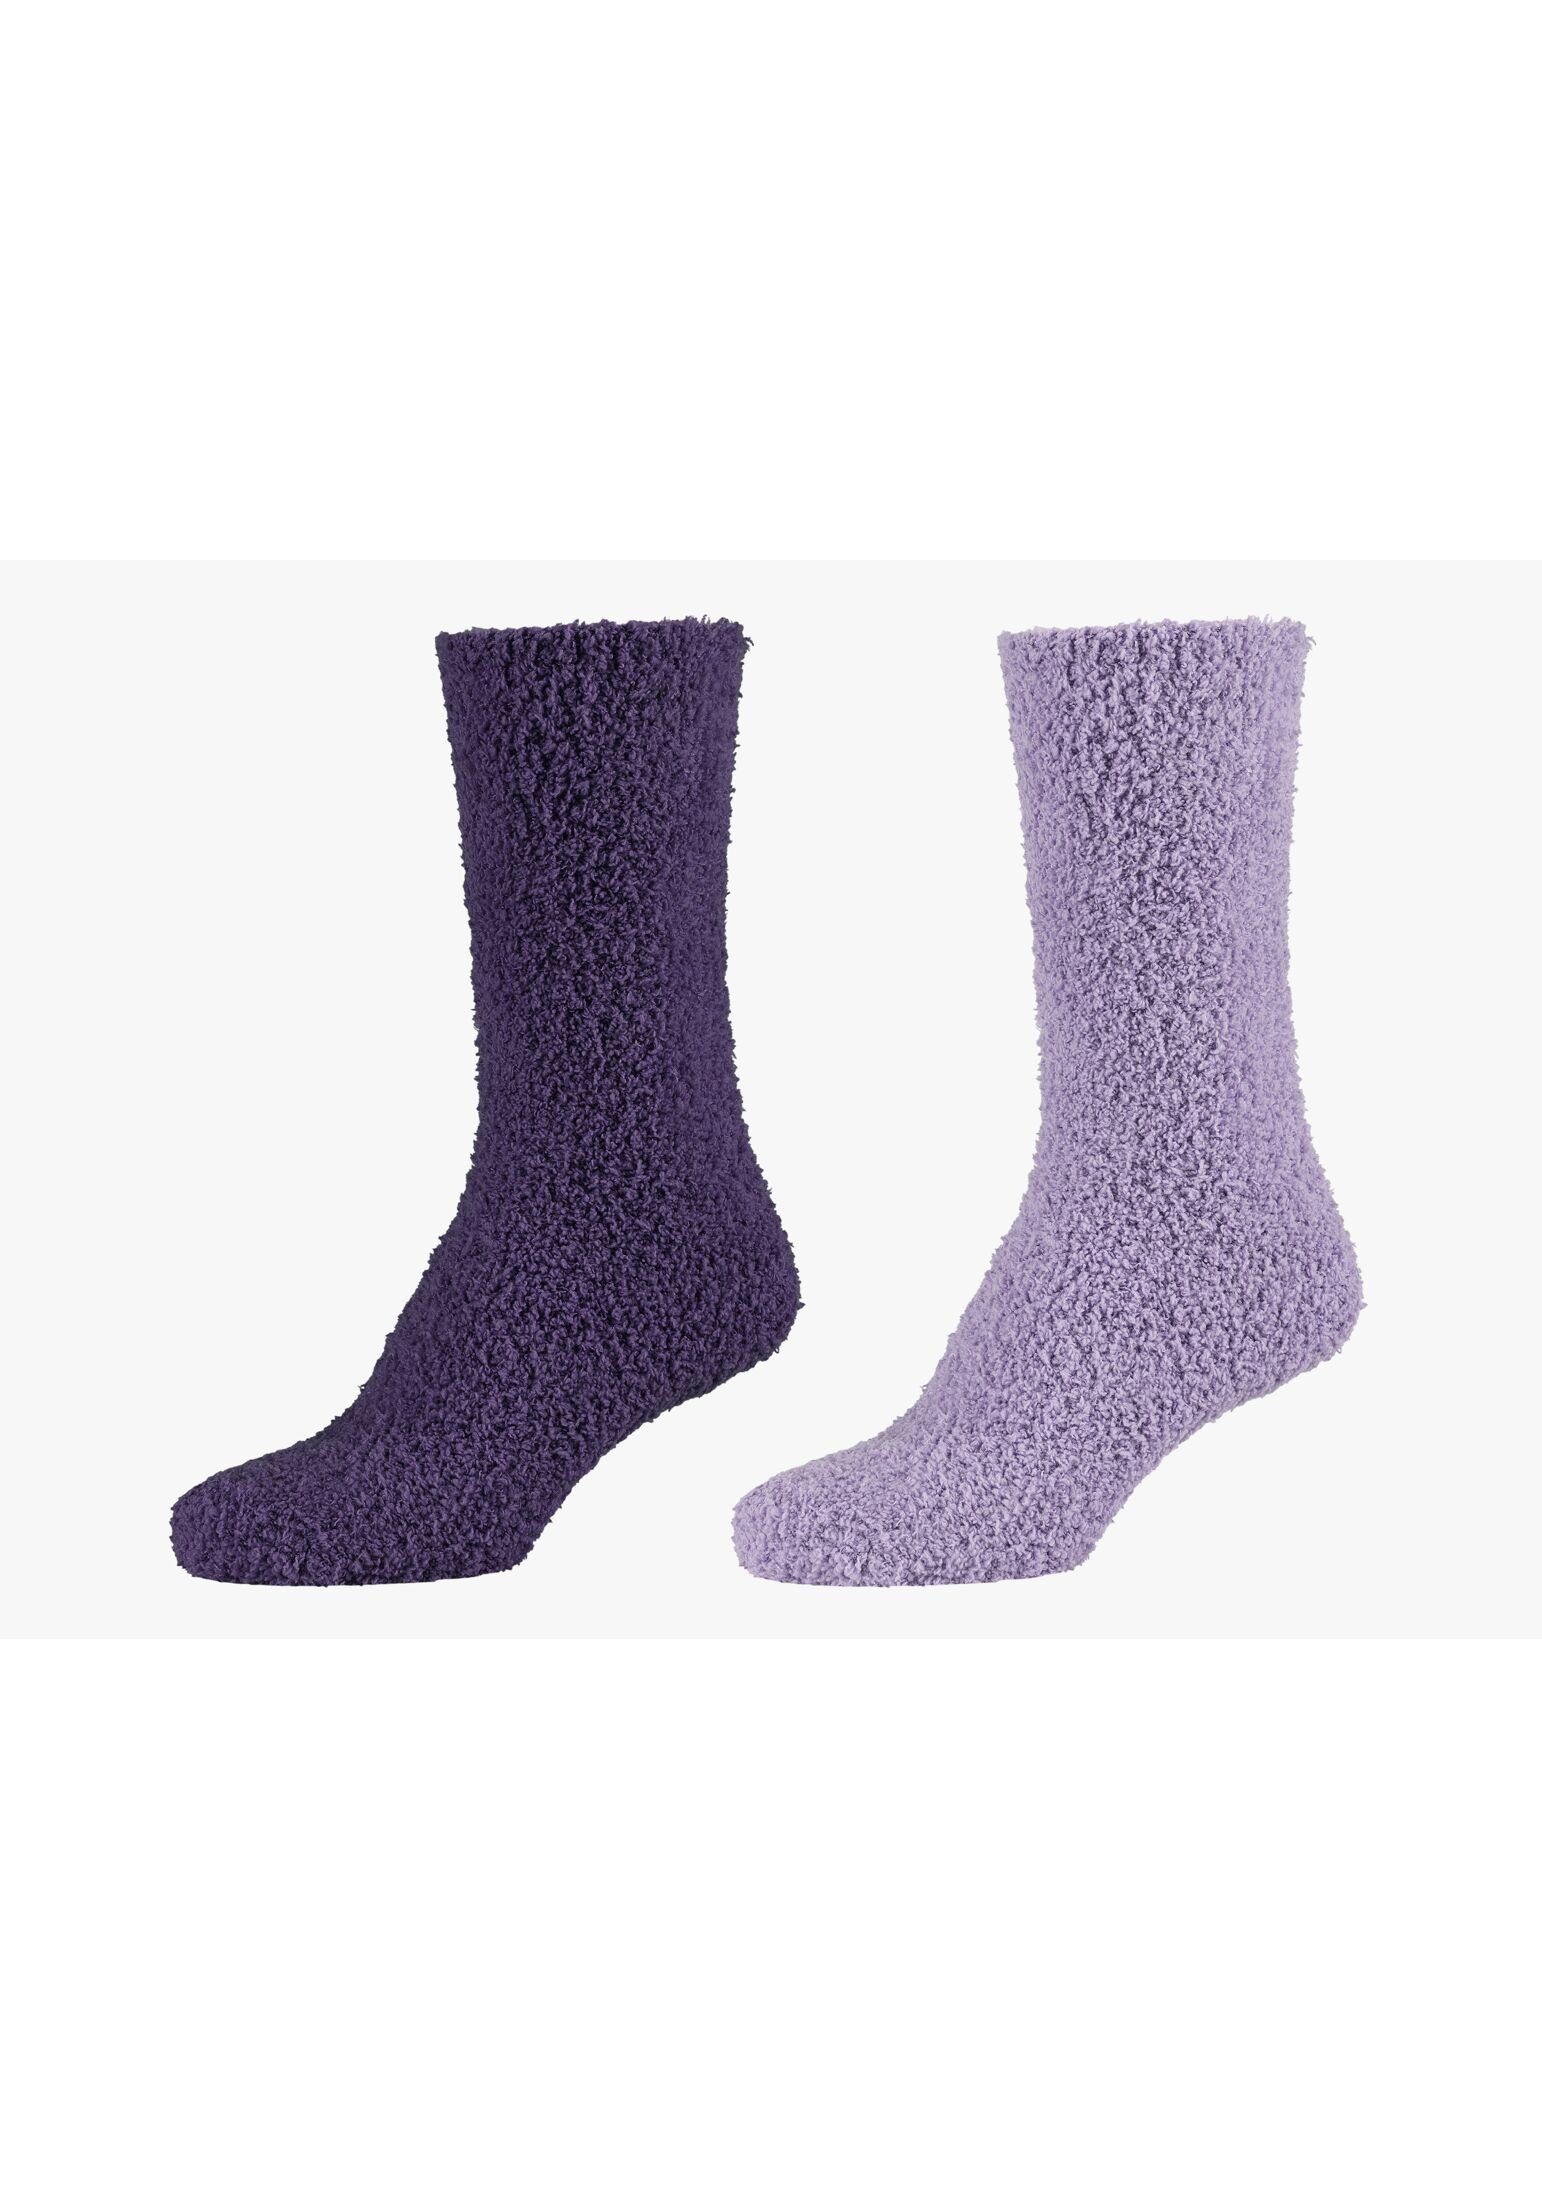 Lang Cosy mulberry purple Camano Kuschelsocken Flauschig Damen Socken Warm Socken